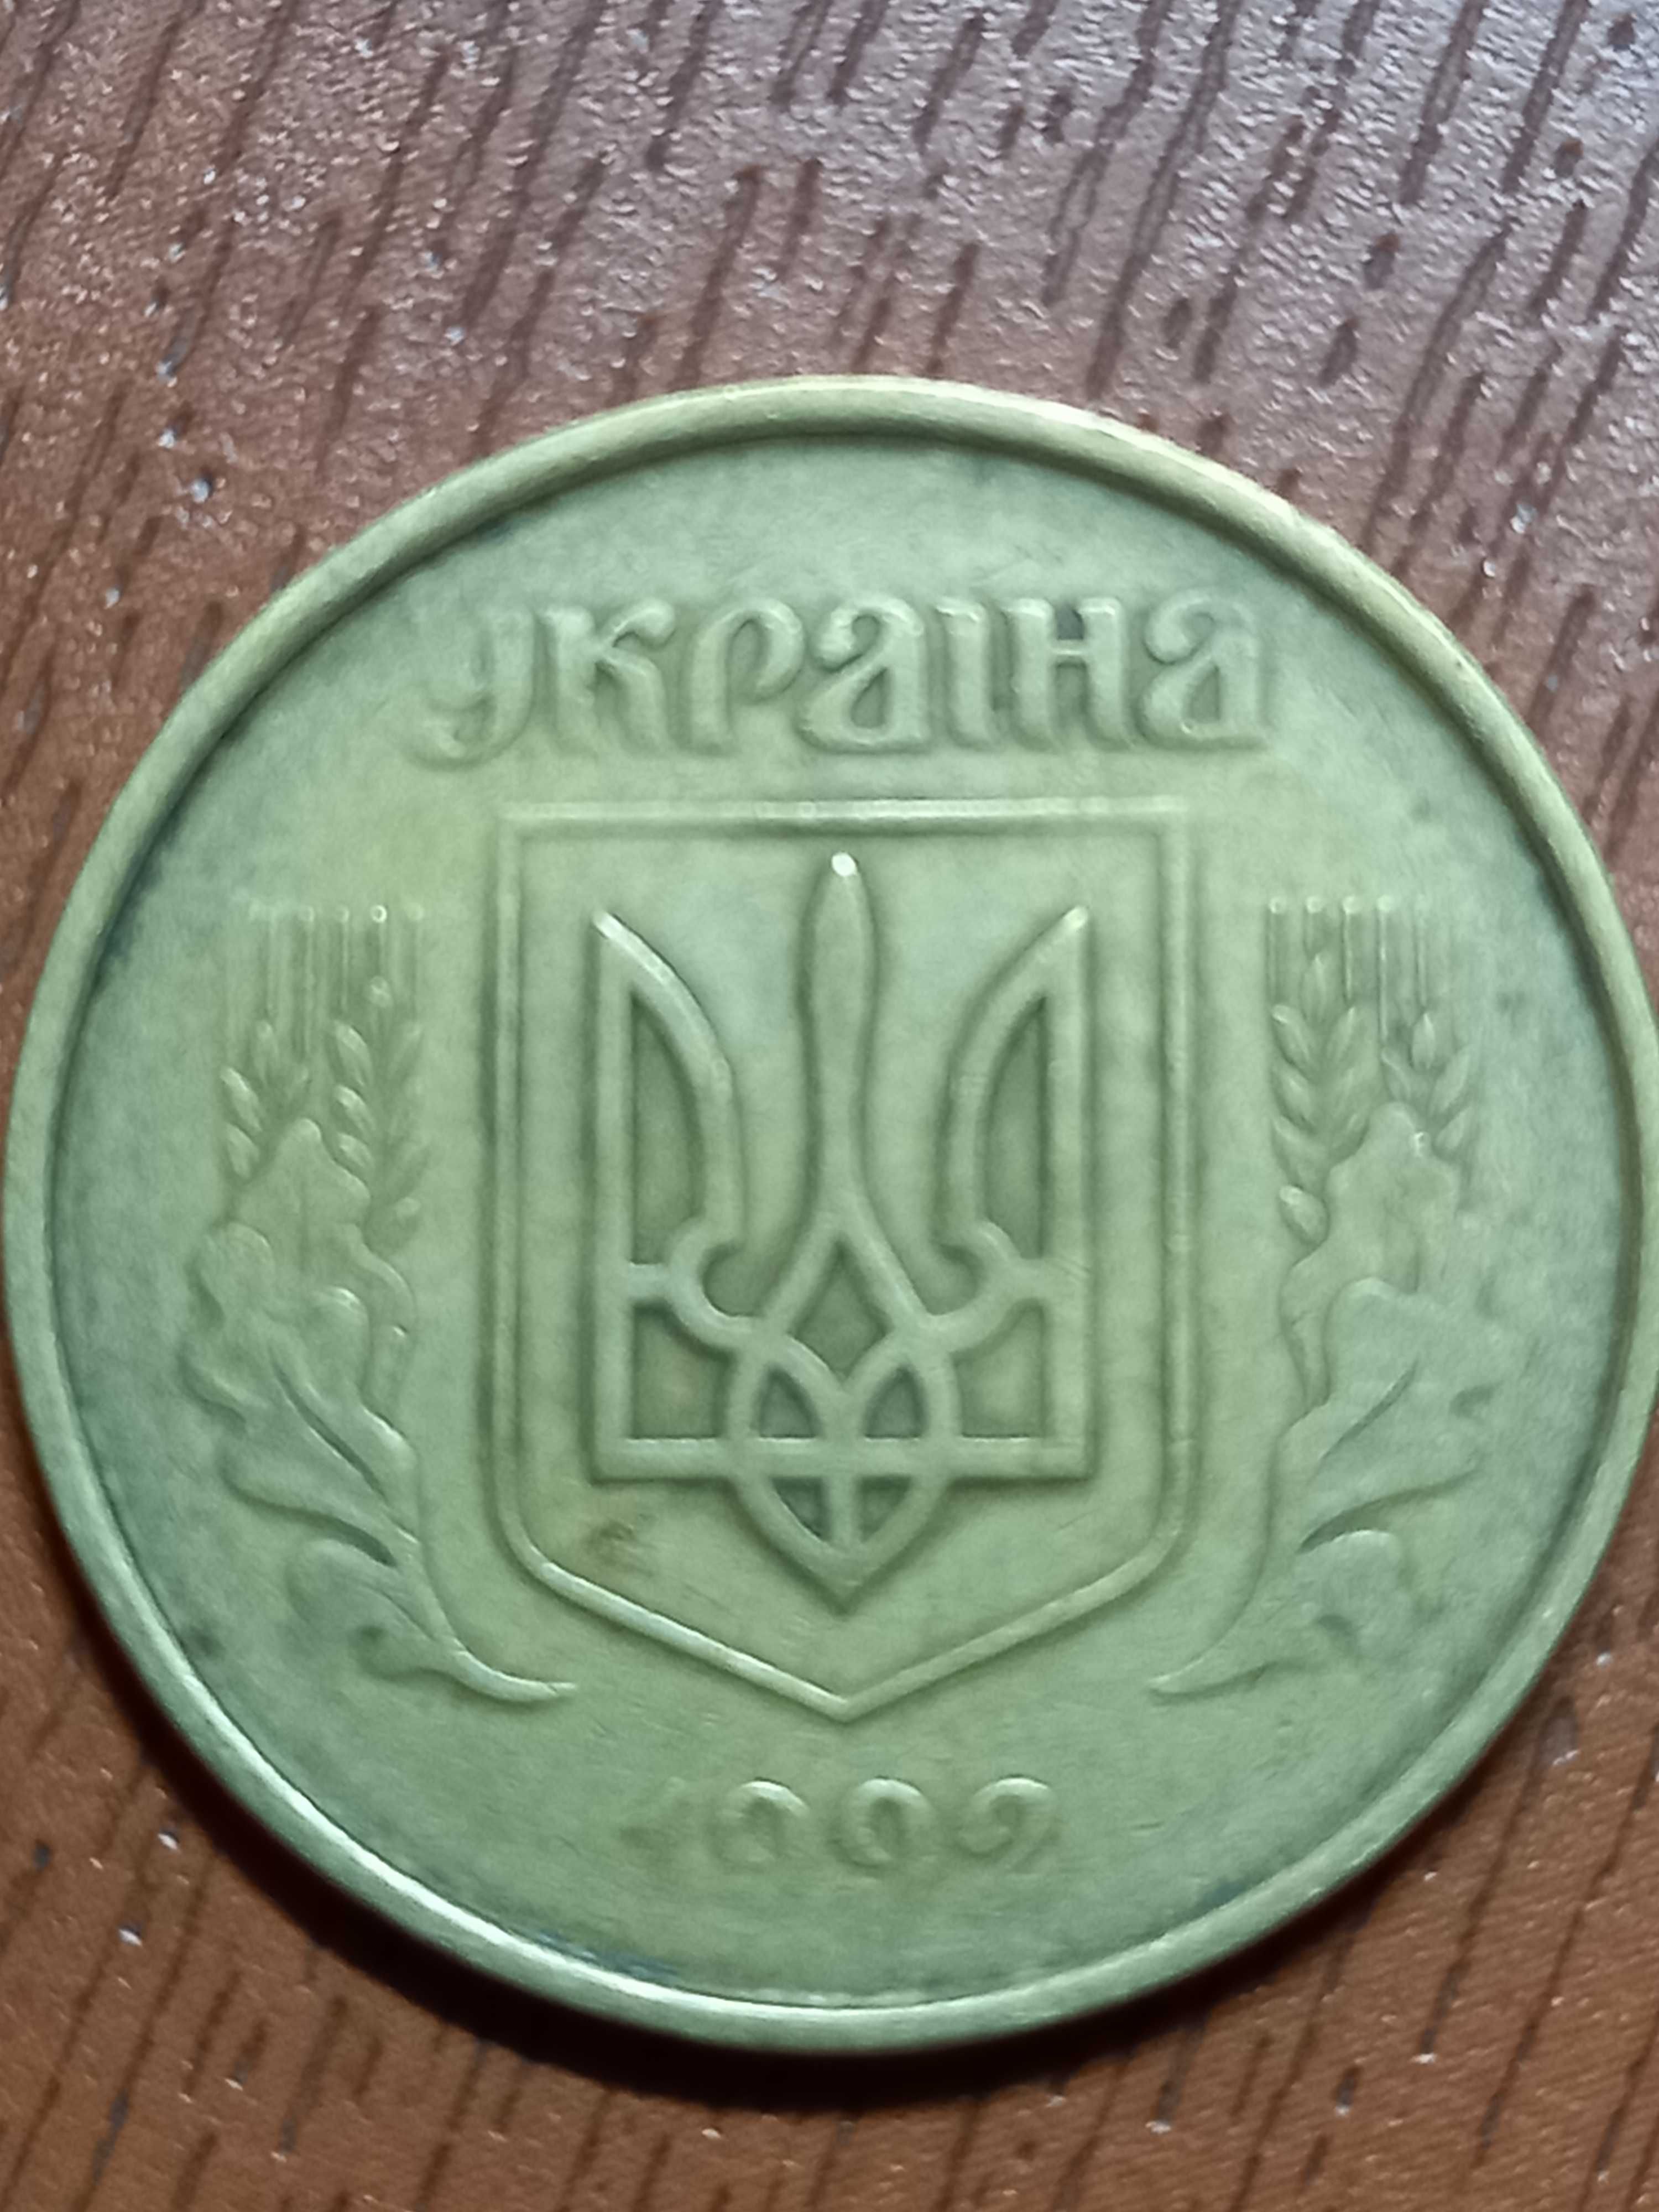 Продаются монеты 50 копеек Украины 1992 года с браками чеканки